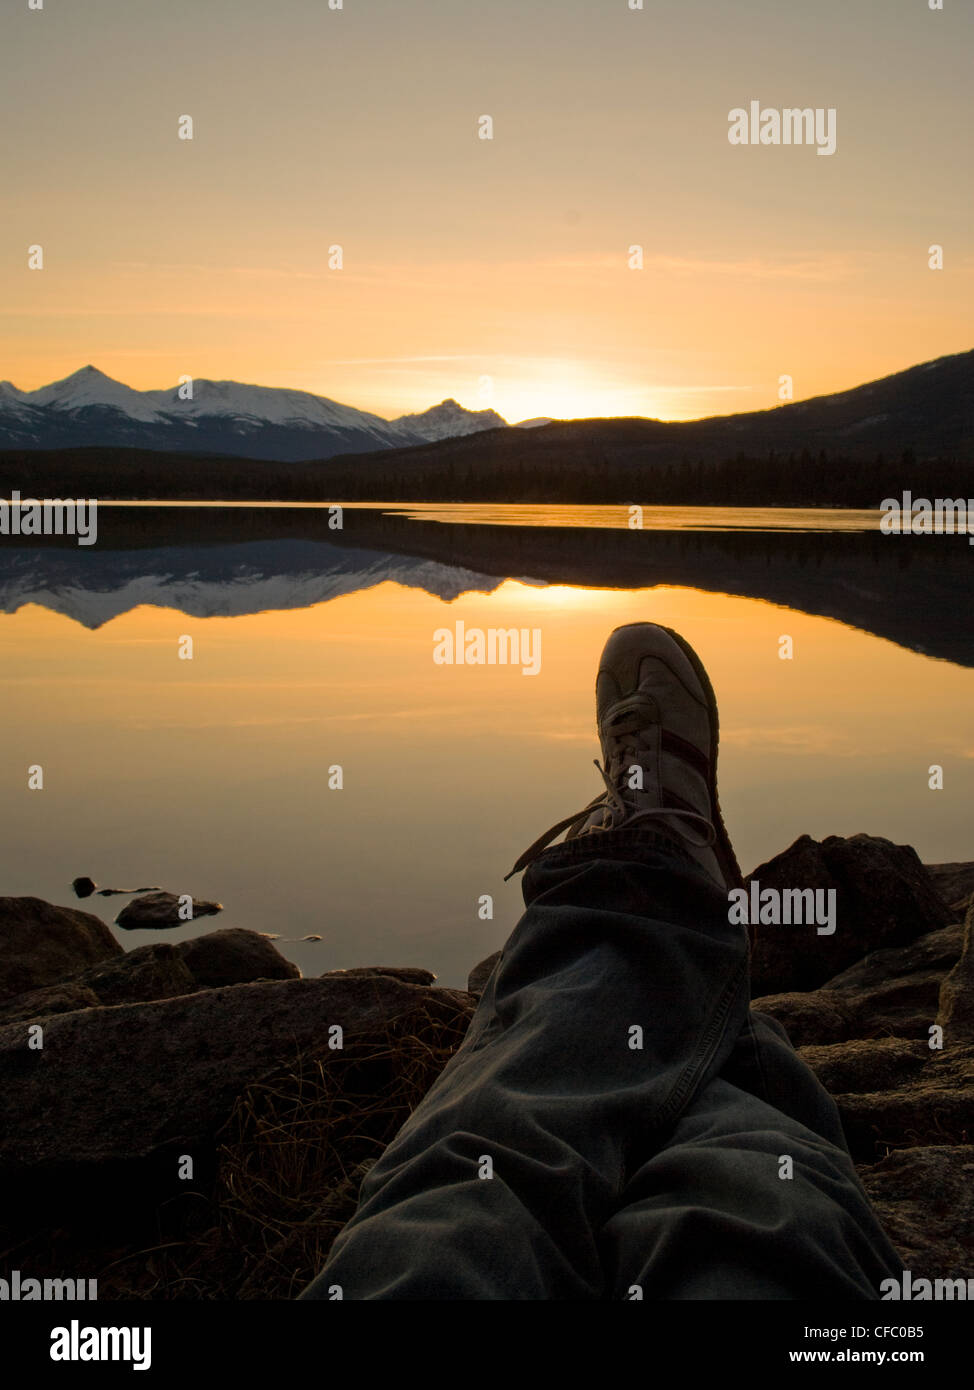 Fotograf tritt zurück, den Sonnenuntergang am Ufer des Pyramid Lake, in der Nähe von Jasper, Alberta, Kanada. Stockfoto